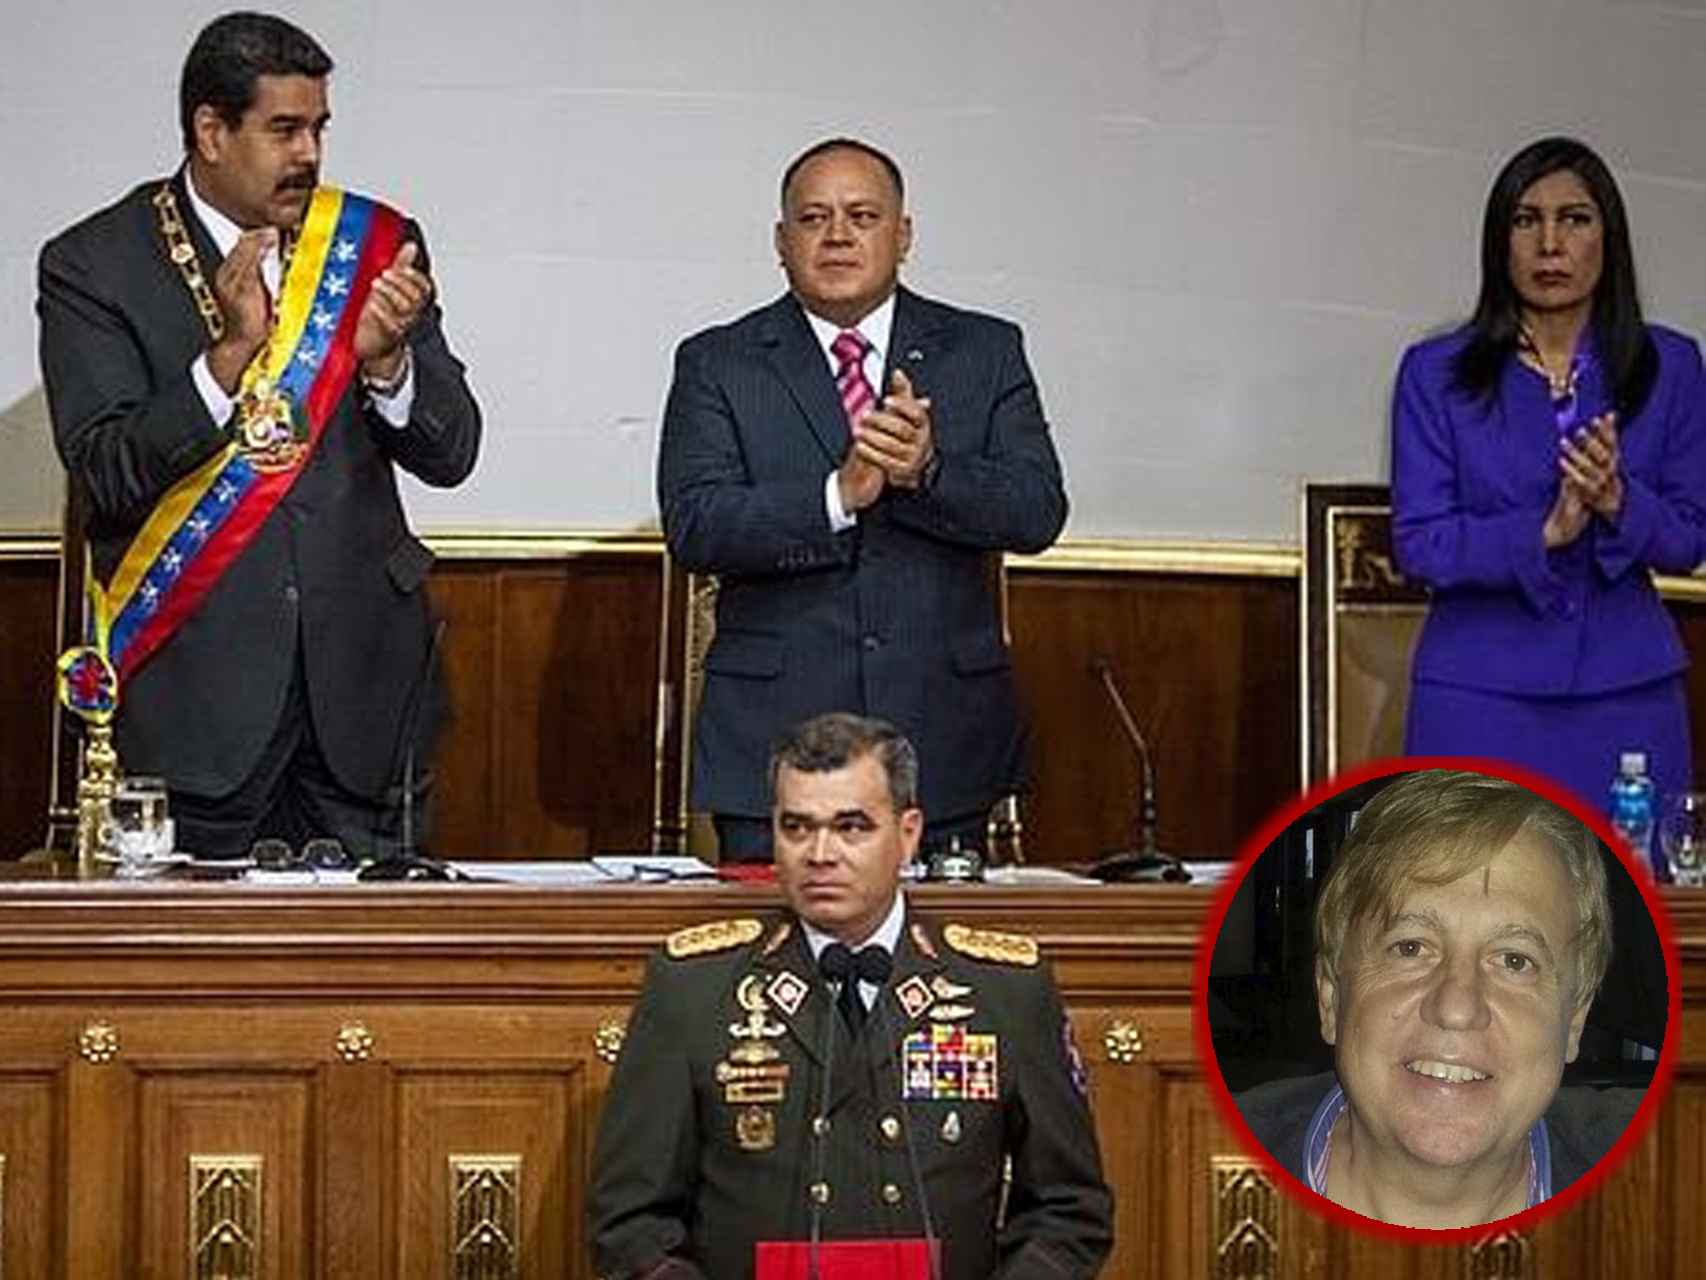 Nicolás Maduro, Diosdado Cabello, Gladys Gutiérrez y Vladimir Padrino López. Abajo, Carlos Malo de Molina